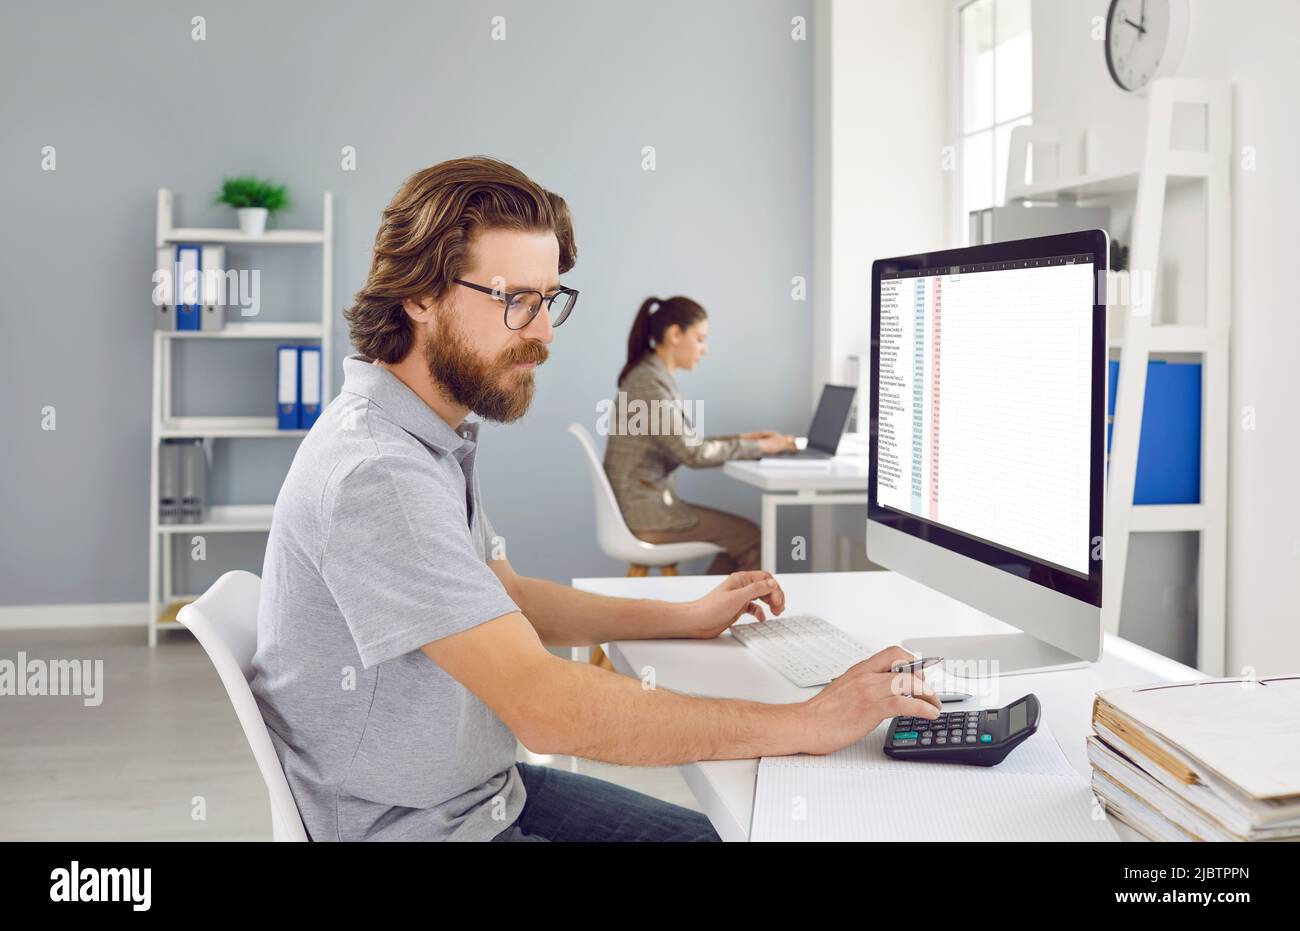 Der männliche Buchhalter verwendet Rechner und Software auf dem Laptop, um das Finanzprojekt der Buchhaltung zu analysieren. Stockfoto